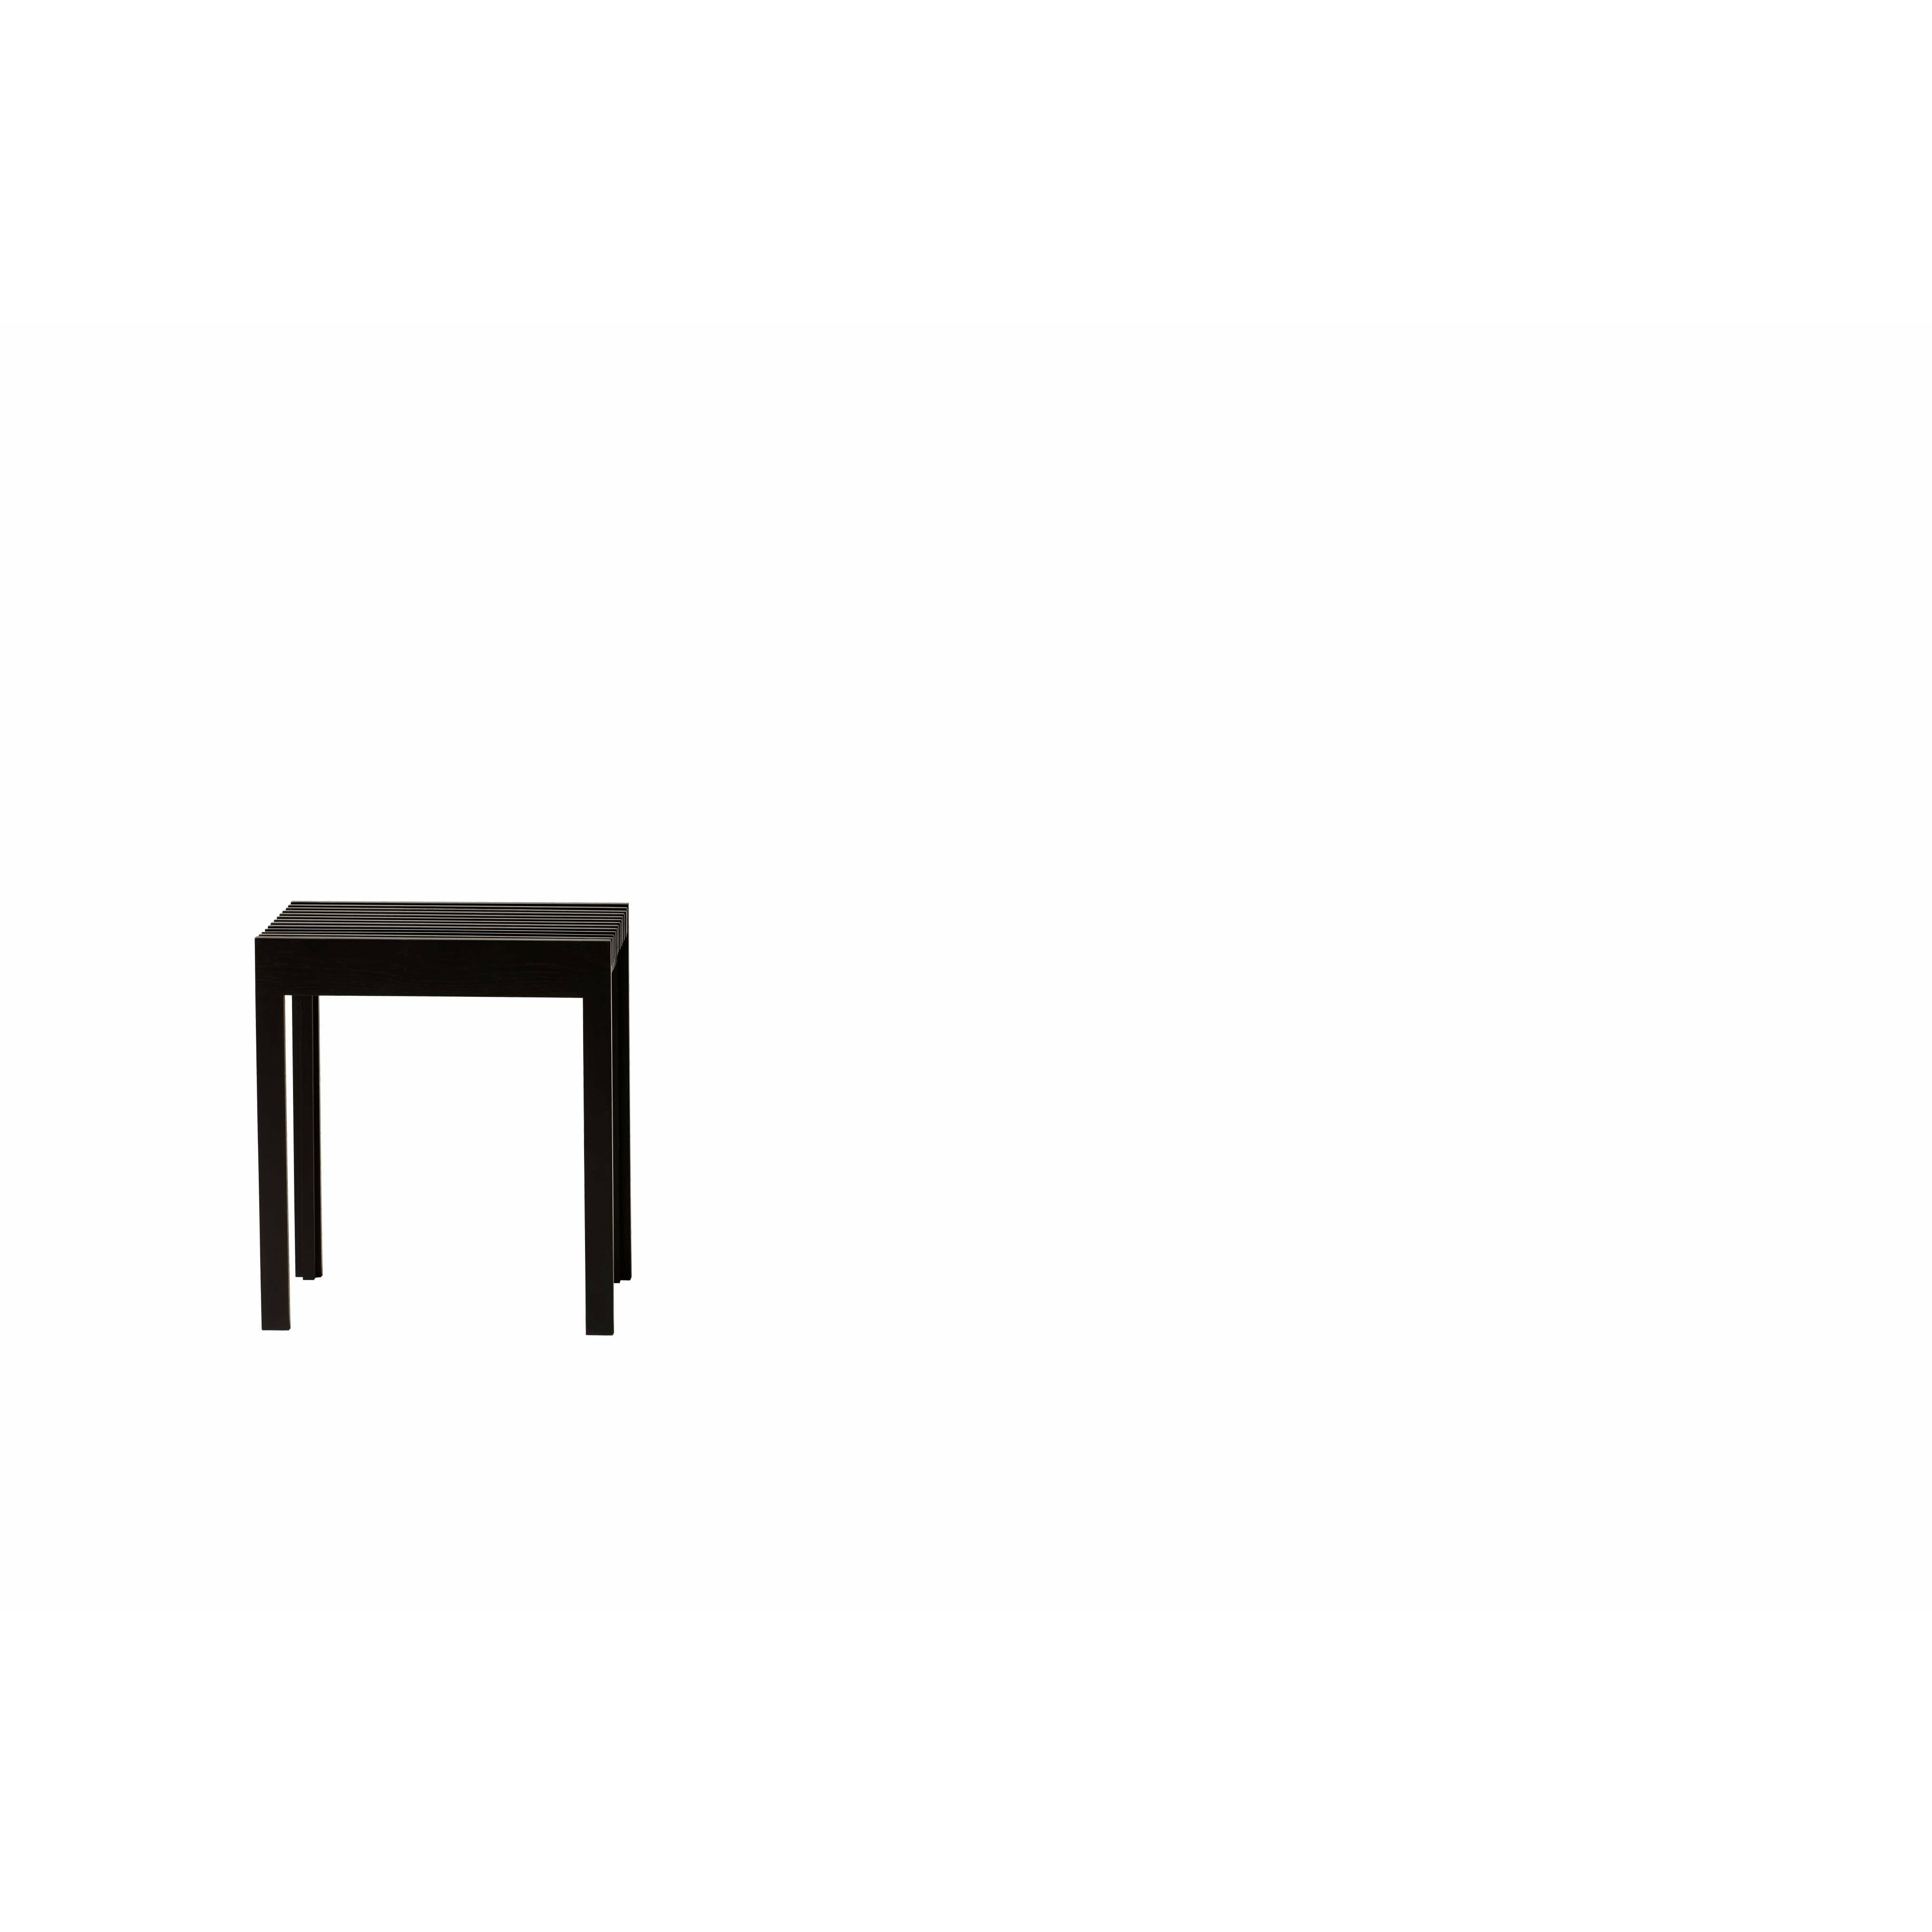 Formen und Verfeinern des leichten Stuhls. Schwarz gefärbte Eiche